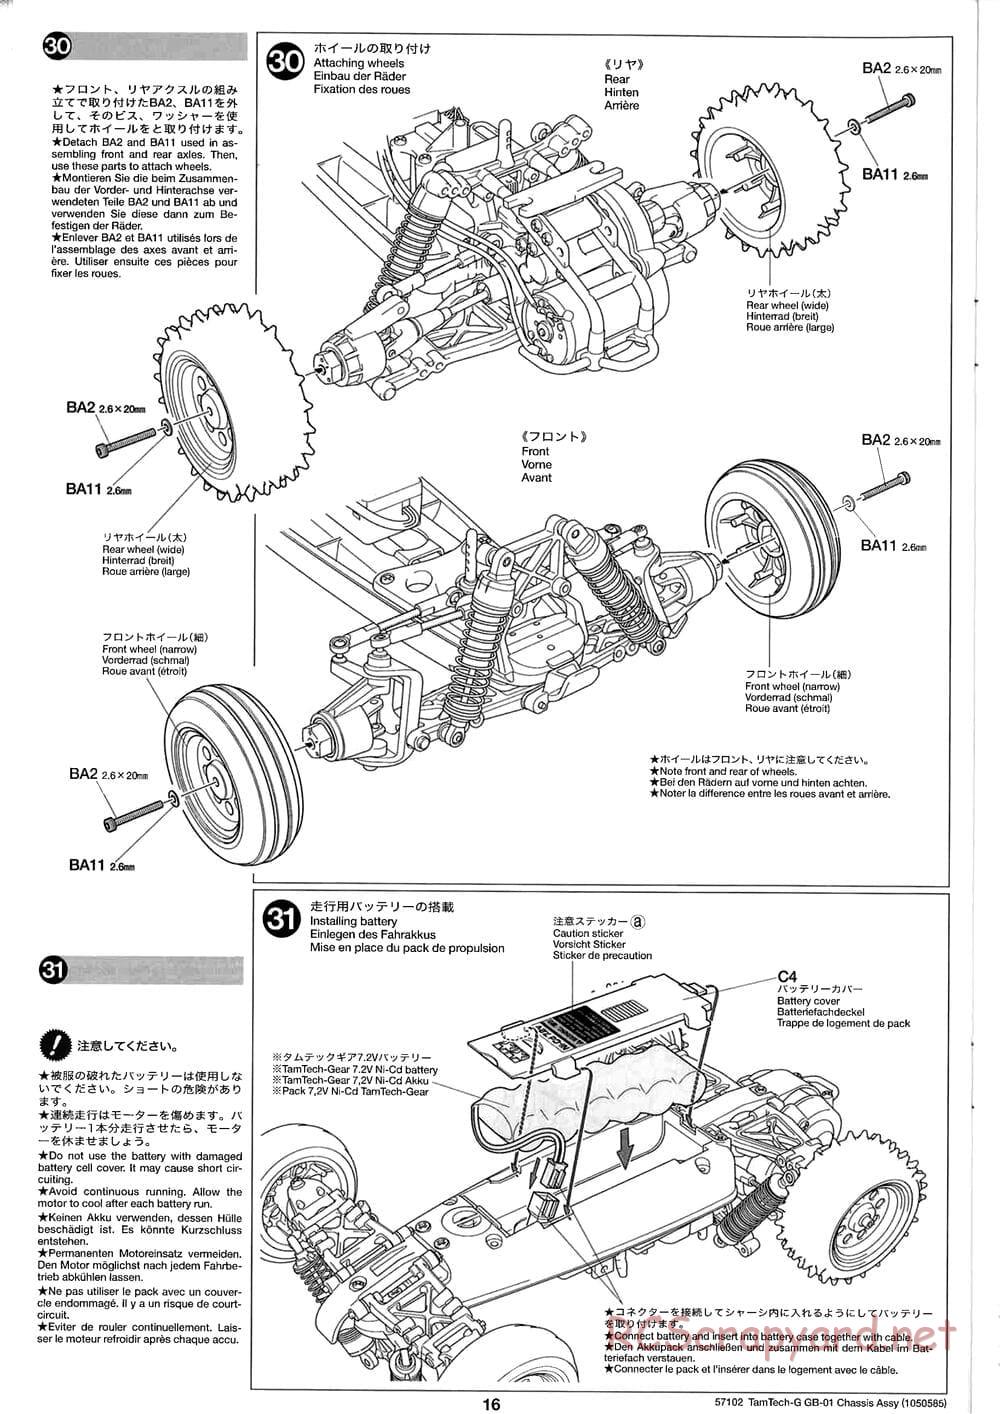 Tamiya - GB-01 Chassis - Manual - Page 16